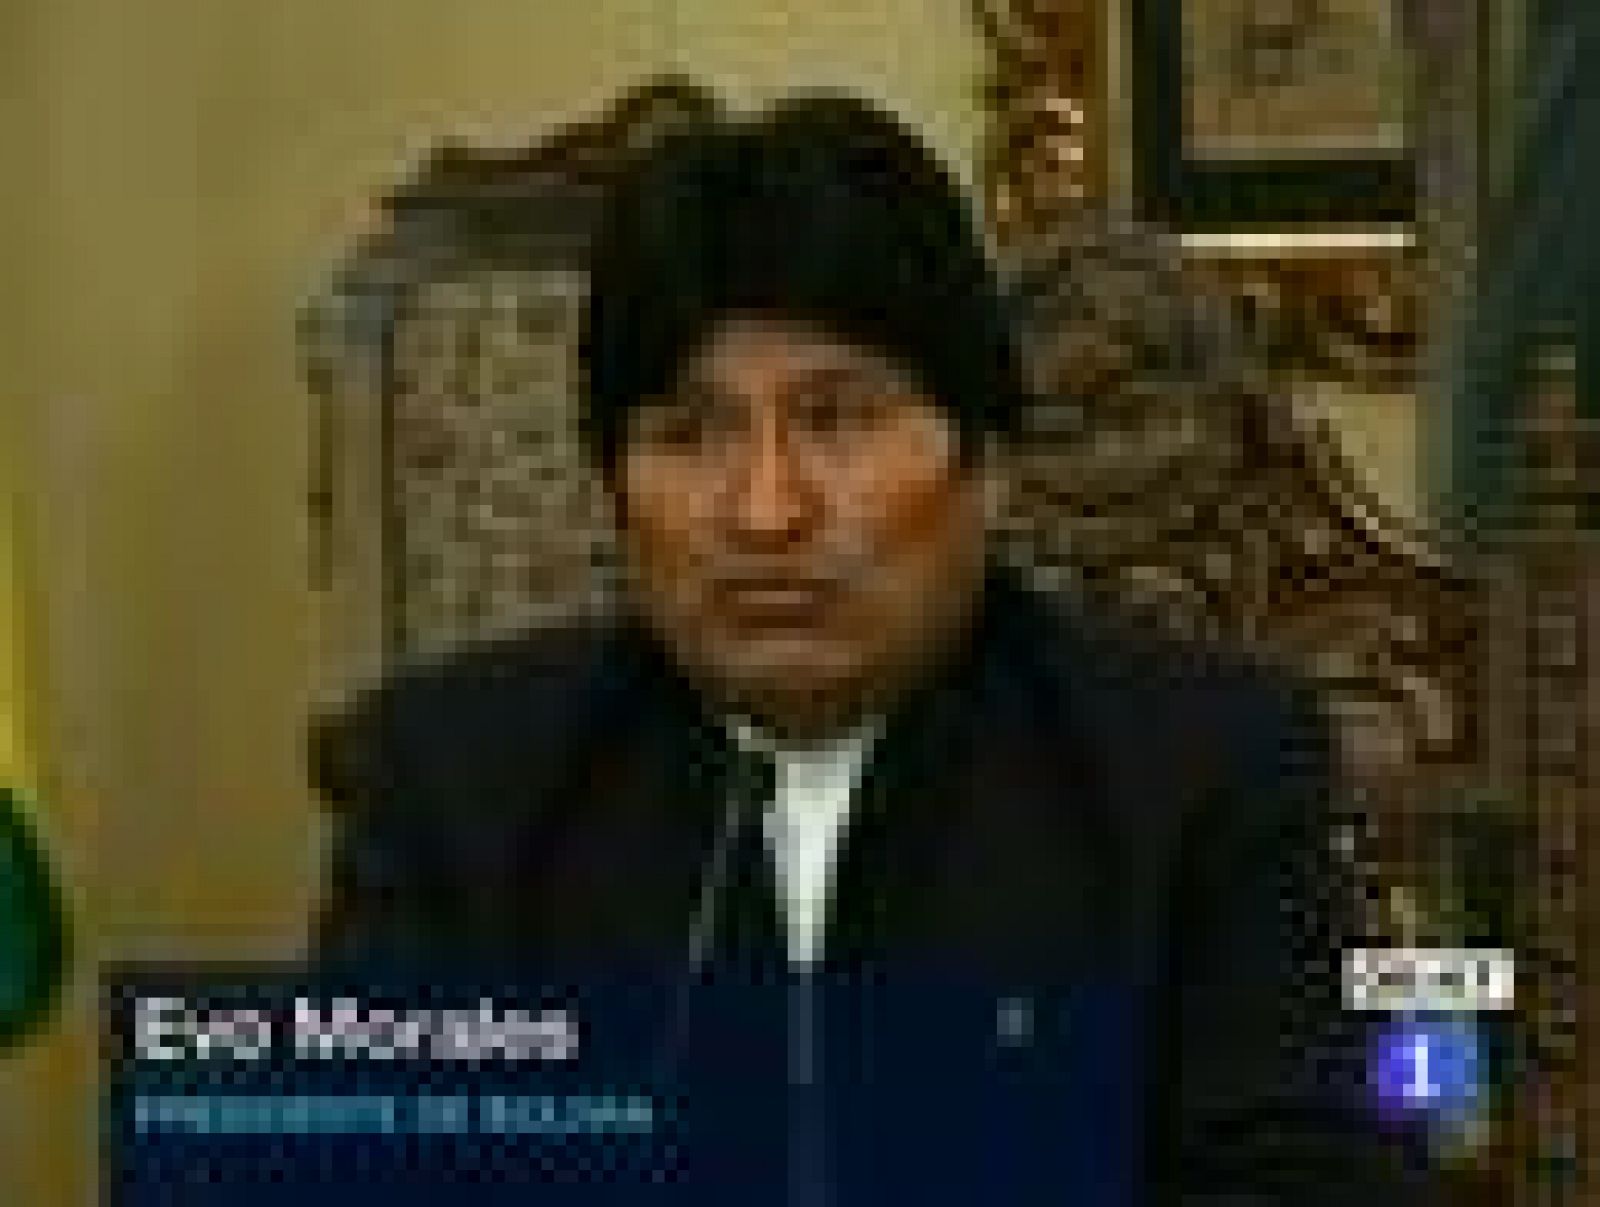  El presidente de Bolivia, Evo Morales, ha anunciado este lunes que suspende la construcción de la polémica carretera que iba a dividir un parque natural y ha calificado de "imperdonable" la violenta represión policial del domingo contra la marcha indígena que se oponía a ese proyecto.